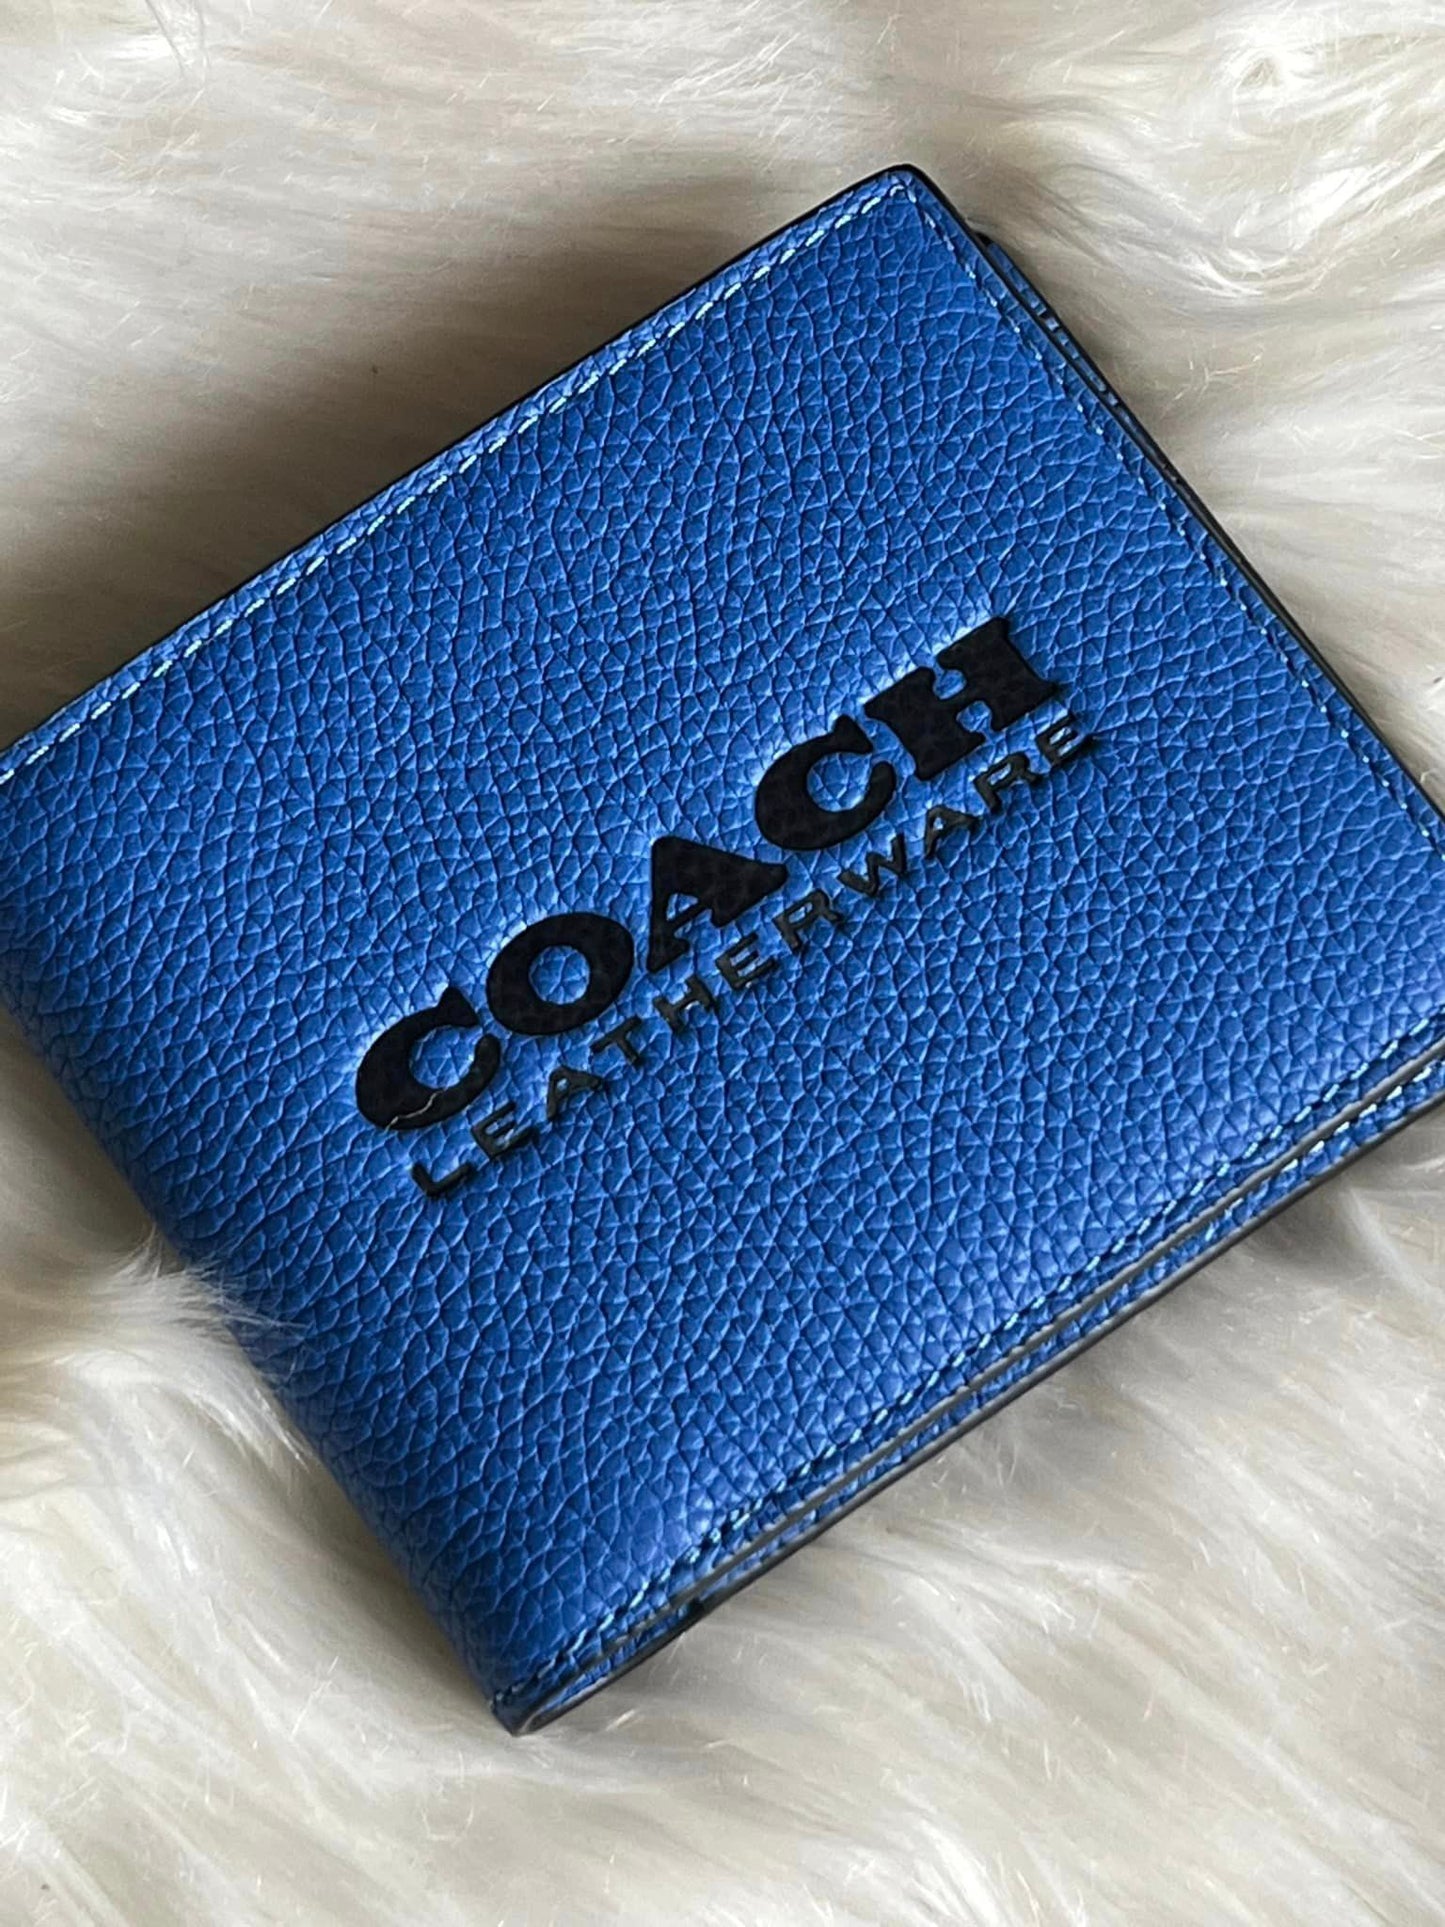 Coach Men’s 3-in-1 Wallet